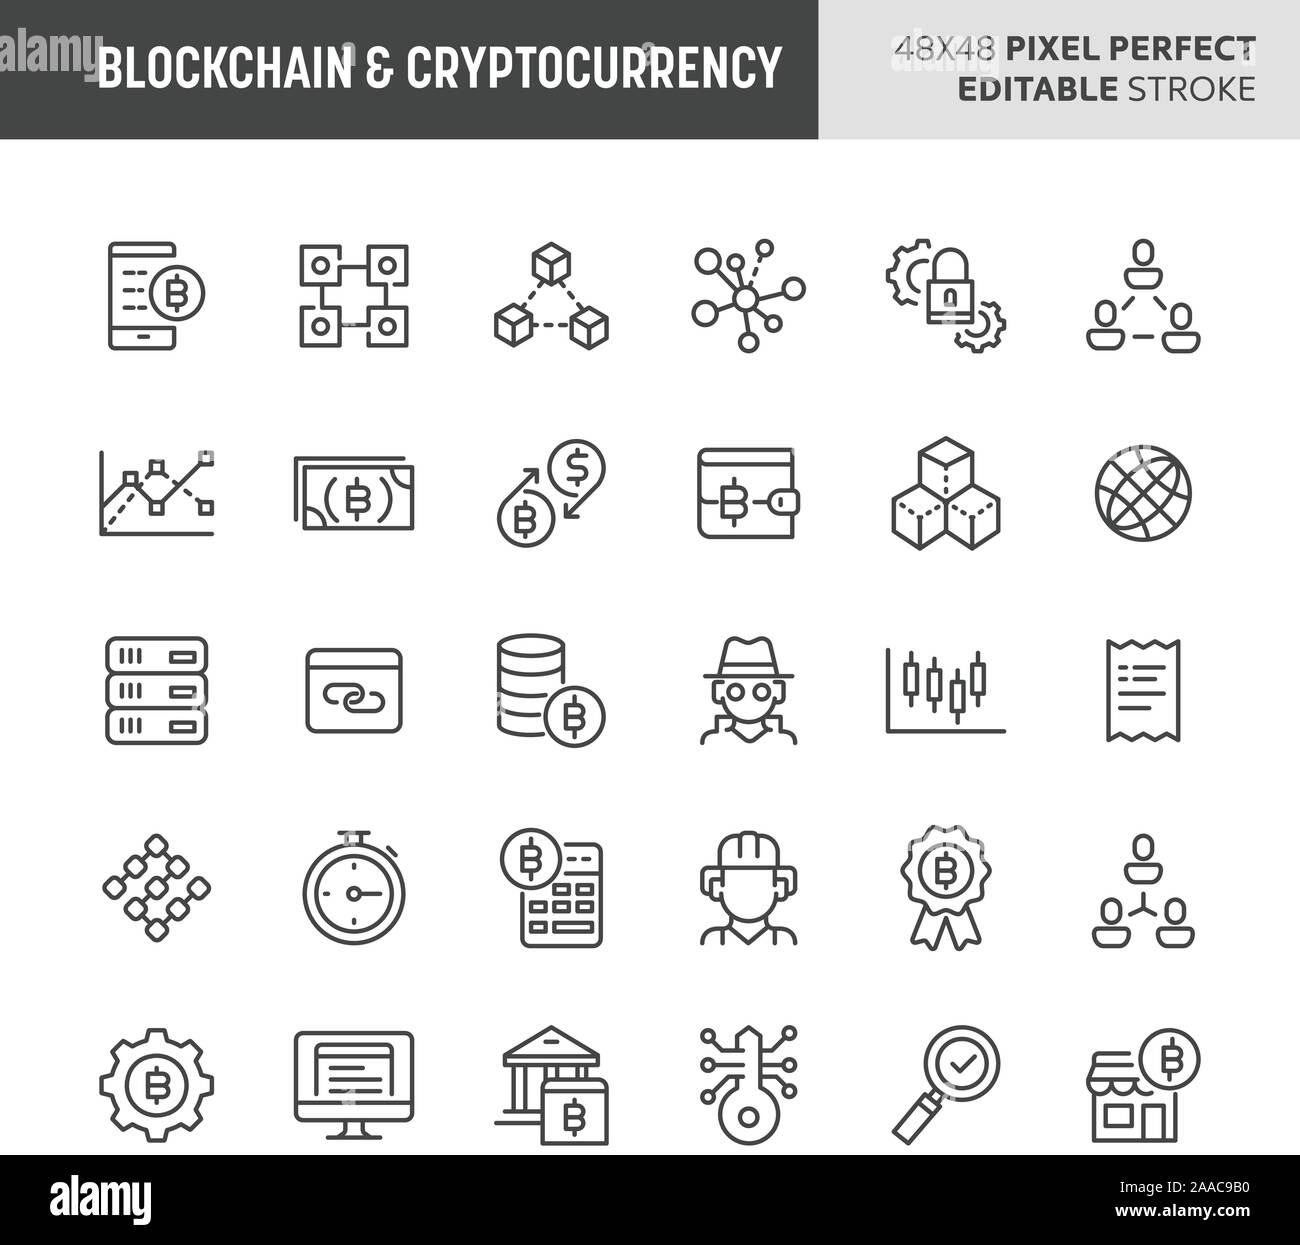 30 linea sottile icone associate con blockchain & cryptocurrency. Simboli come dati digitali, crittografia, transaction & sicurezza sono inclusi. 48x48 Illustrazione Vettoriale